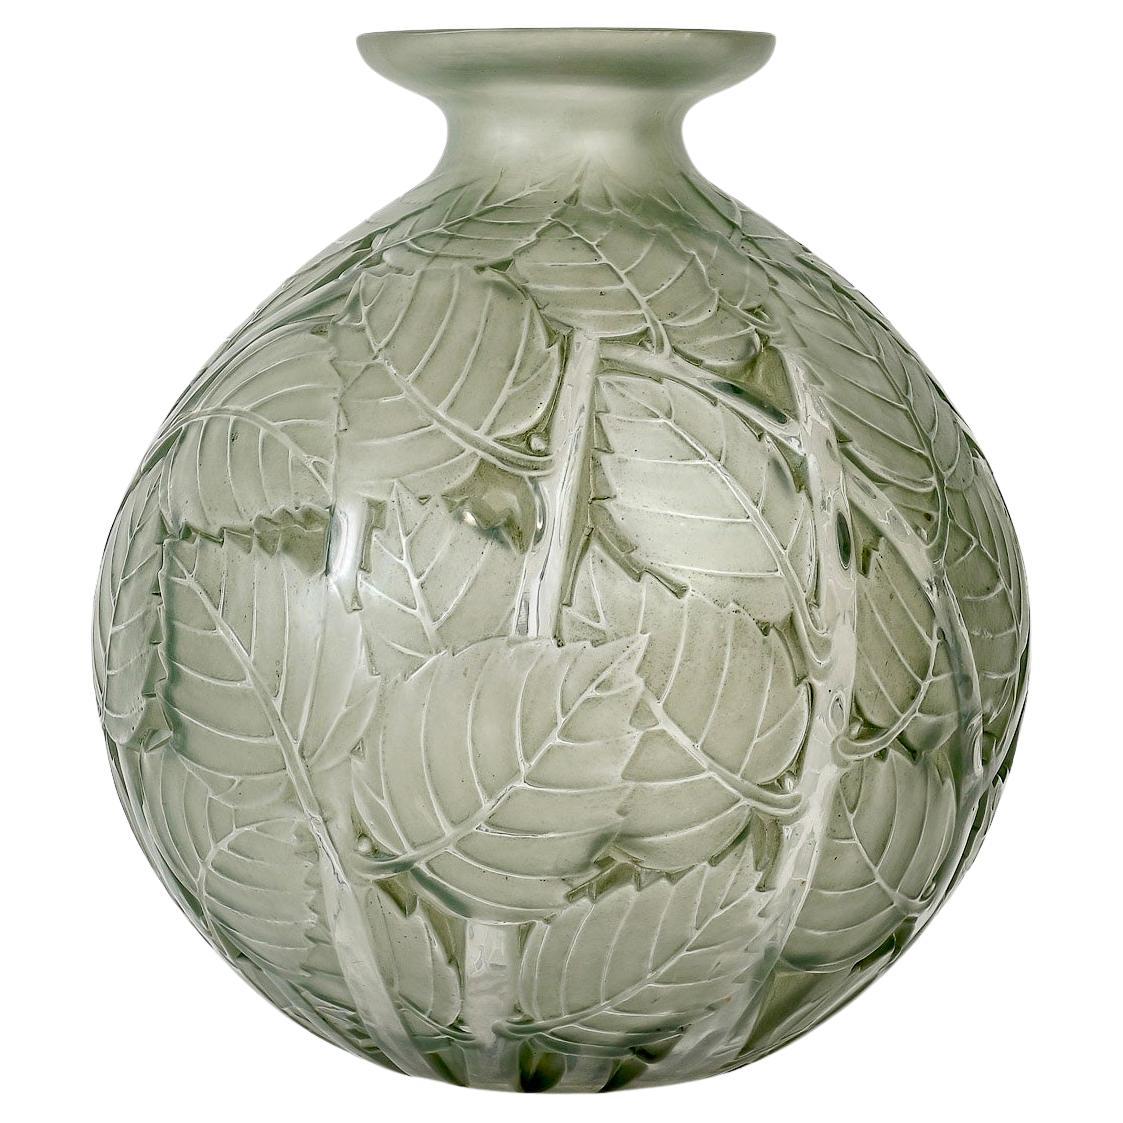 1929 Rene Lalique Vase Milan Verre dépoli avec patine verte